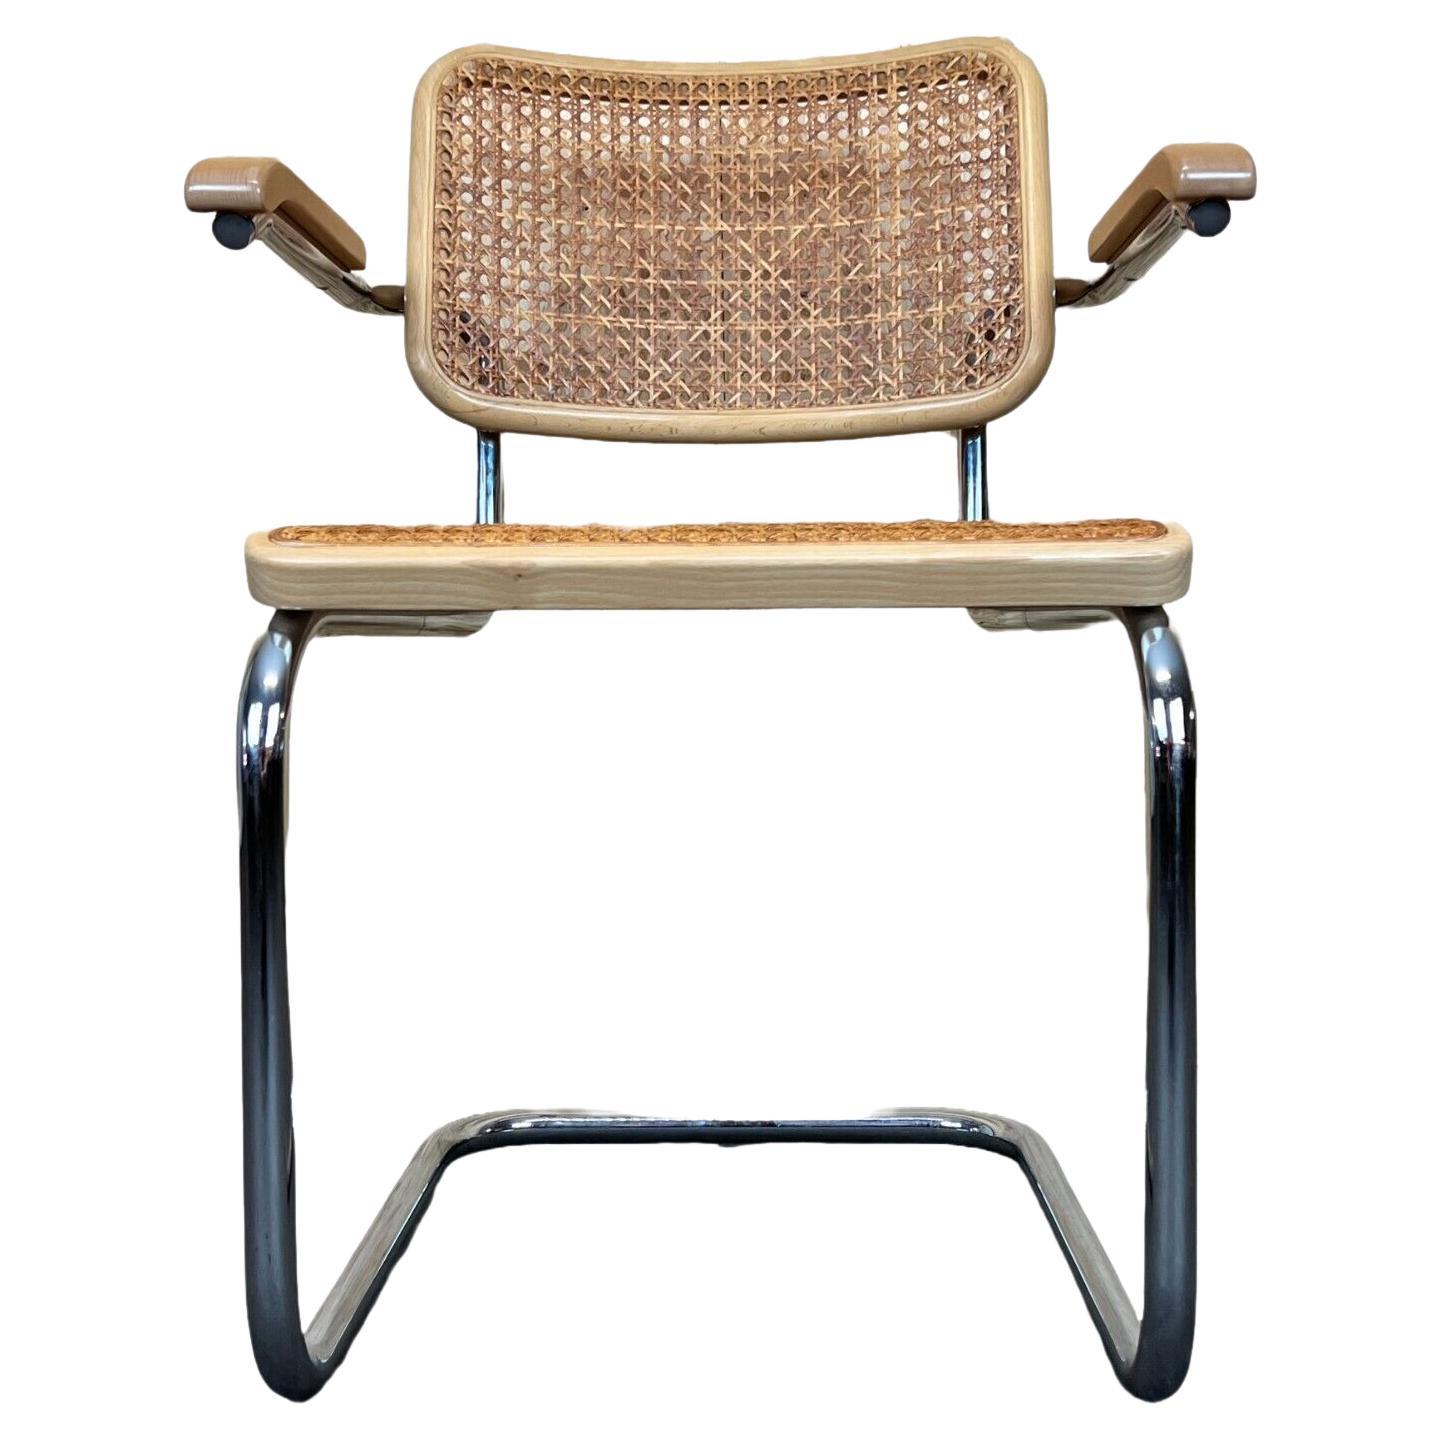 80s Chair Freischwiner Thonet 96 Chrome Armrest Chair Mesh Design